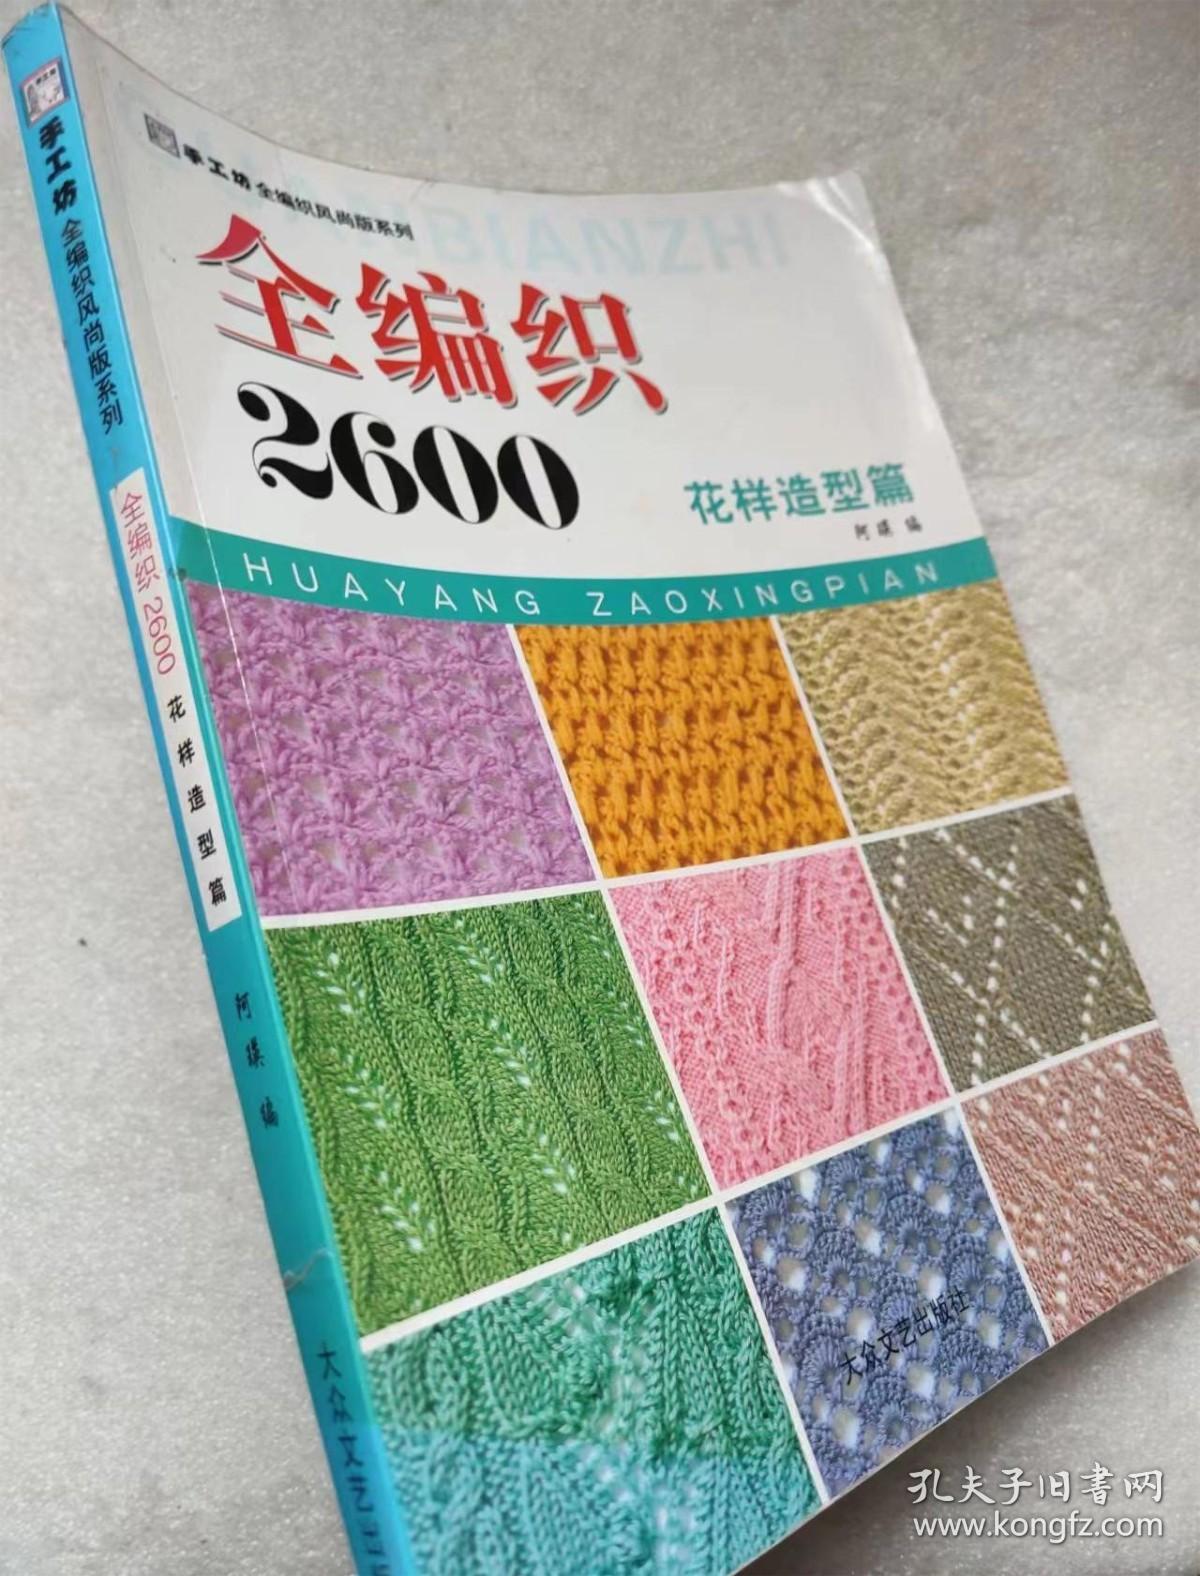 手工坊全编织风尚版系列--全编织2600 花样造型篇--阿瑛编。大众文艺出版社。2009年。1版1印。